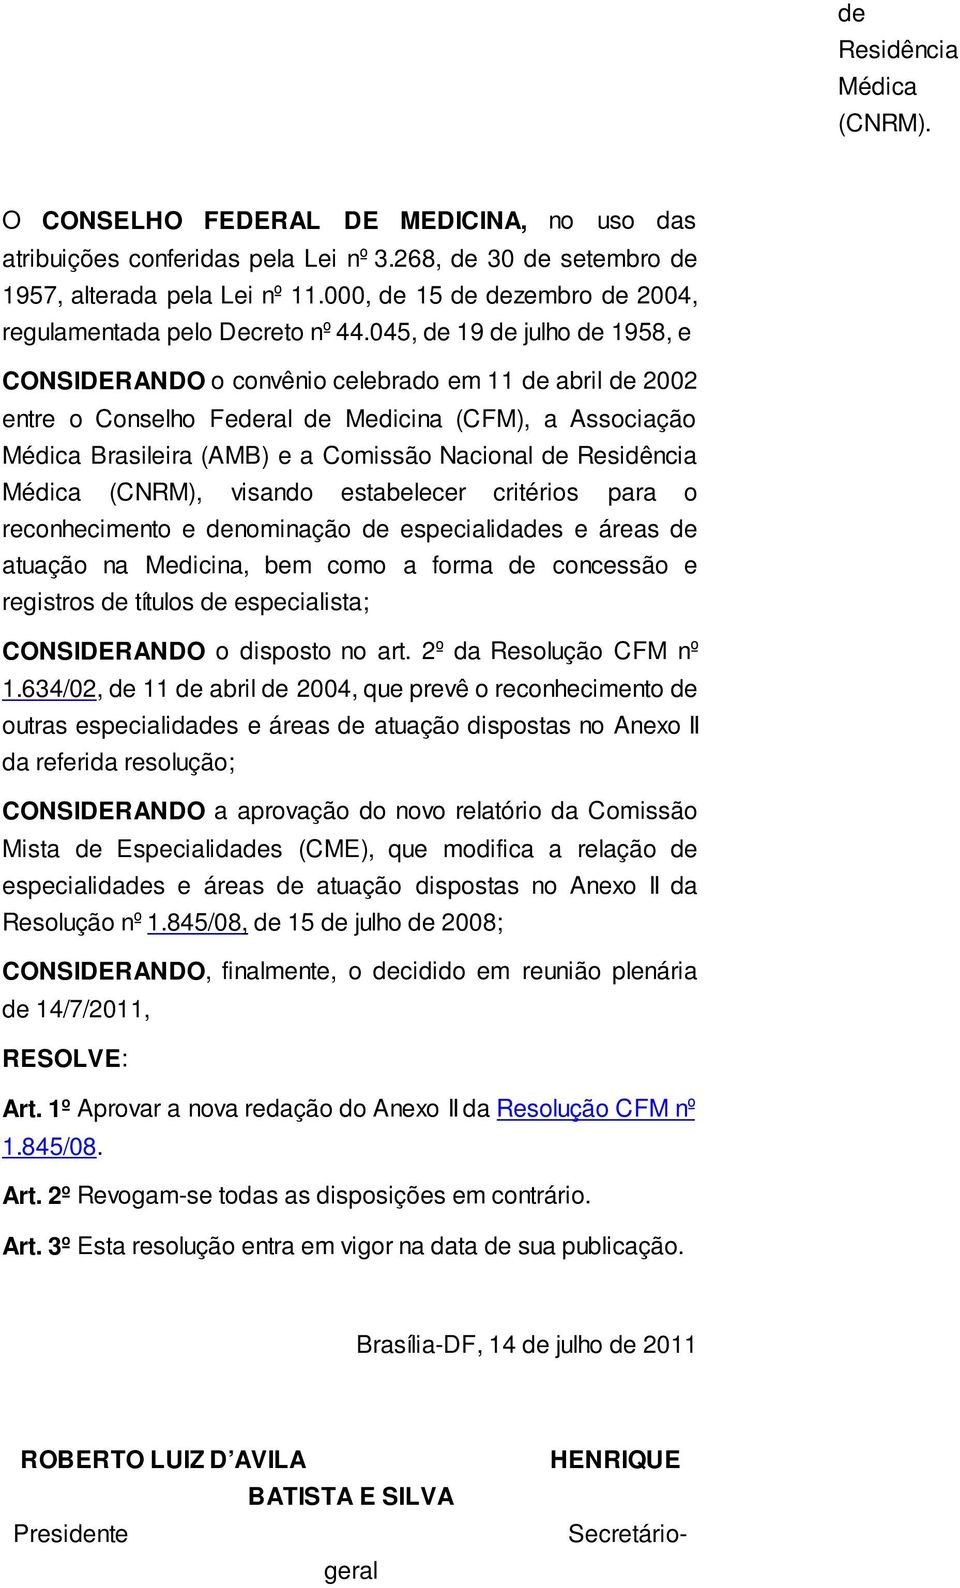 045, de 19 de julho de 1958, e CONSIDERANDO o convênio celebrado em 11 de abril de 2002 entre o Conselho Federal de Medicina (CFM), a Associação Médica Brasileira (AMB) e a Comissão Nacional de